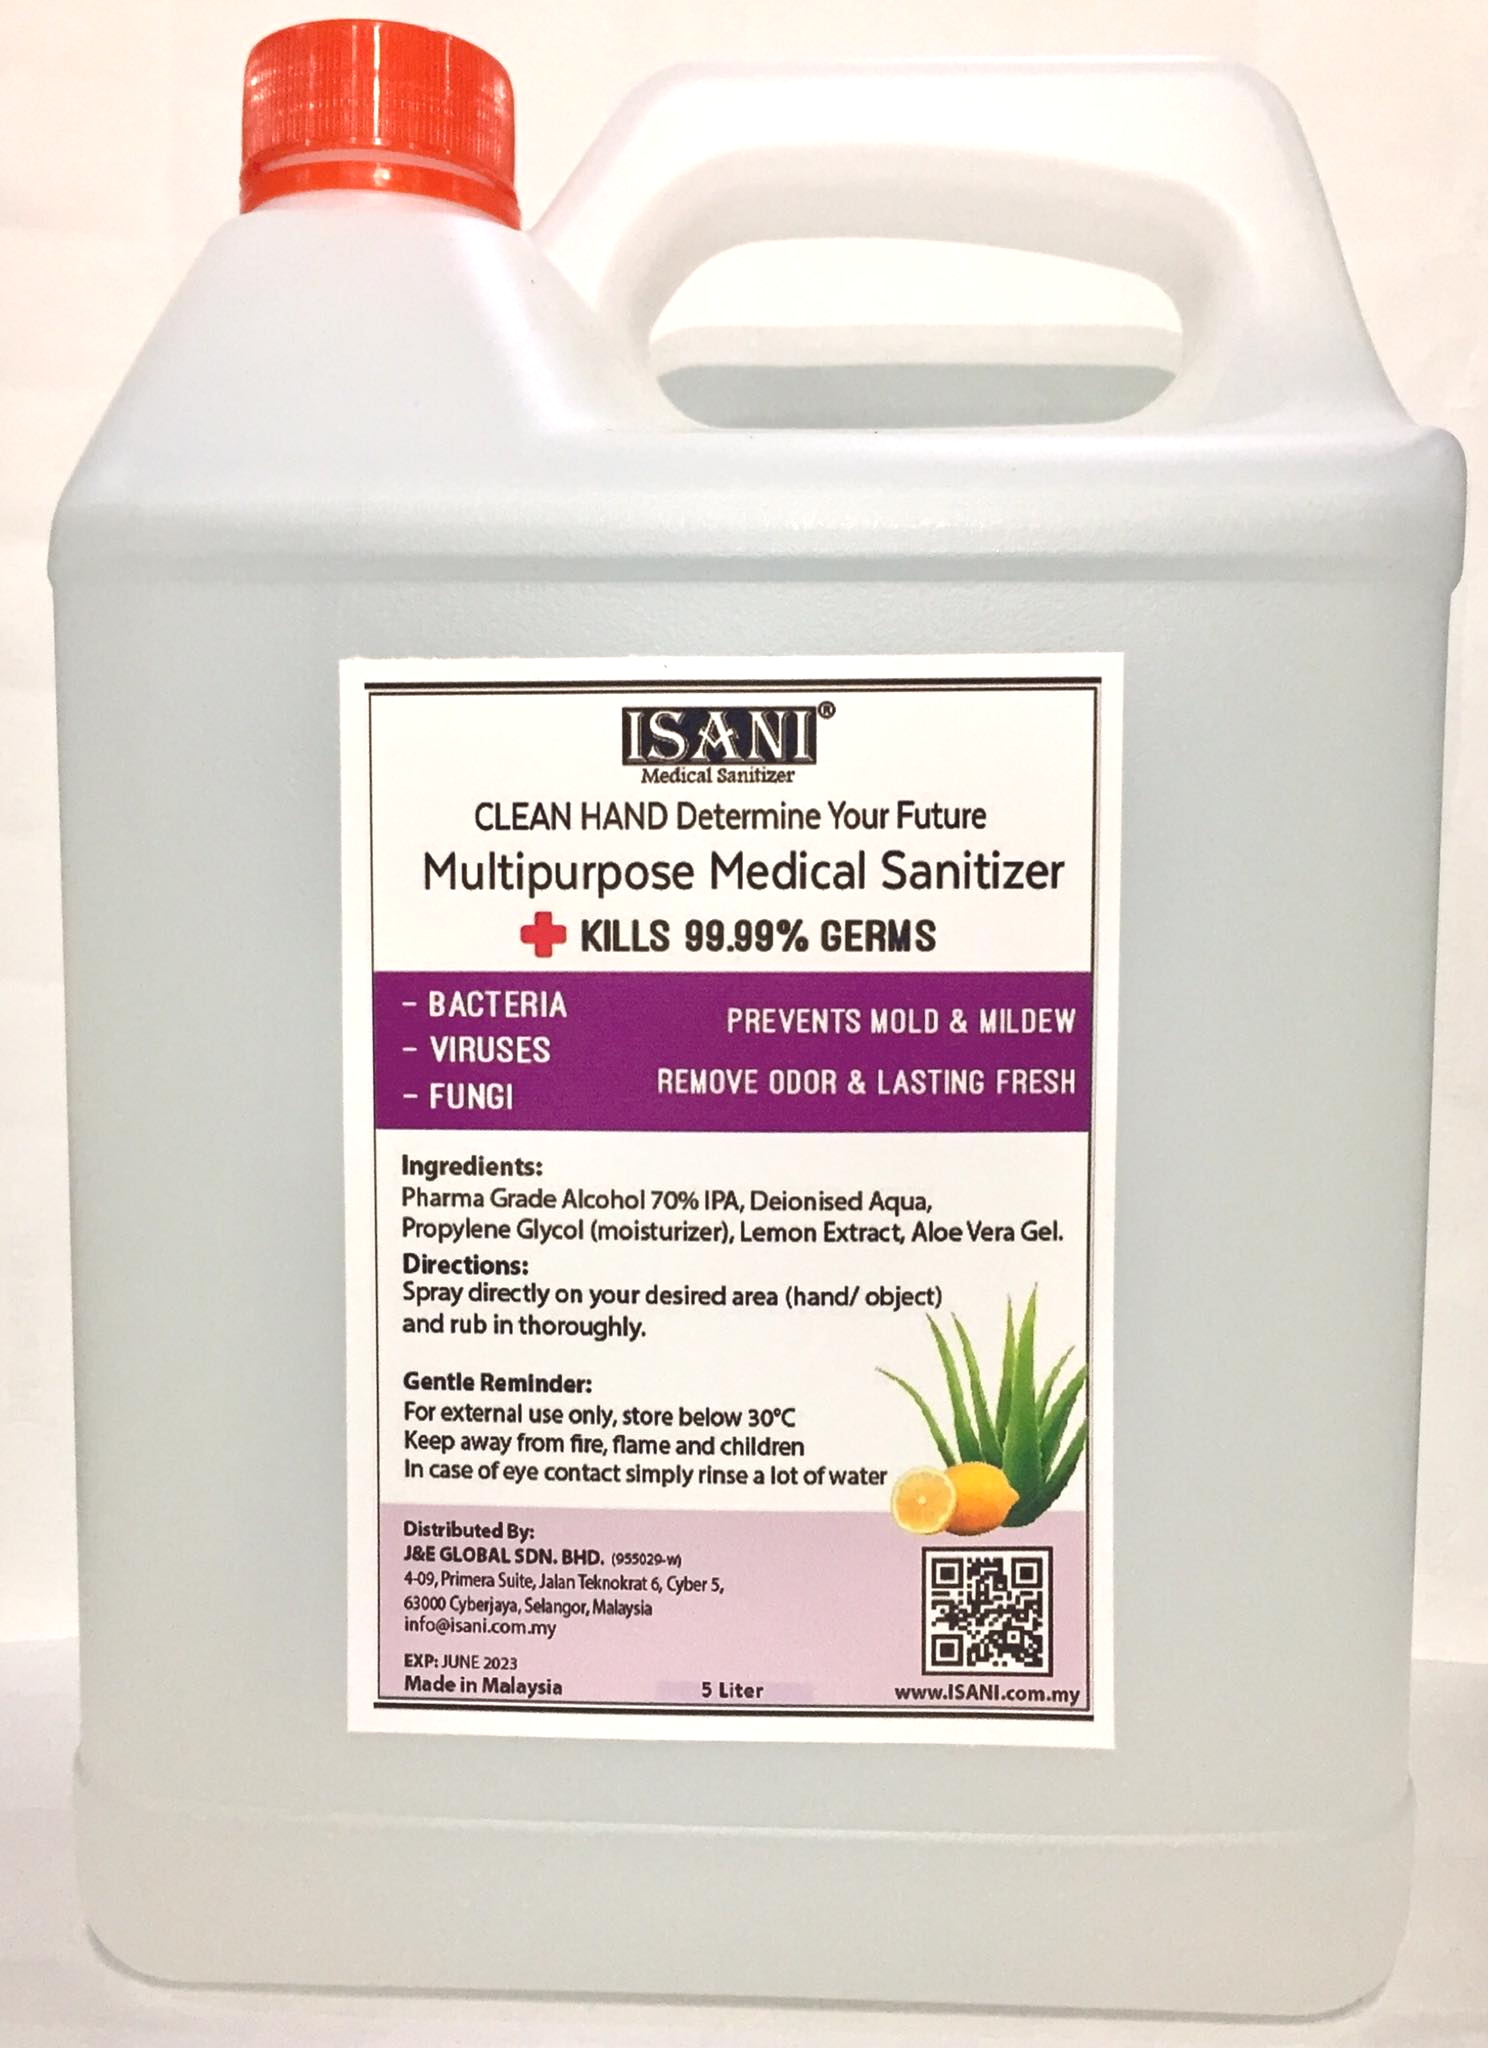 ISANI Multipurpose Medical Sanitizer 5Liter